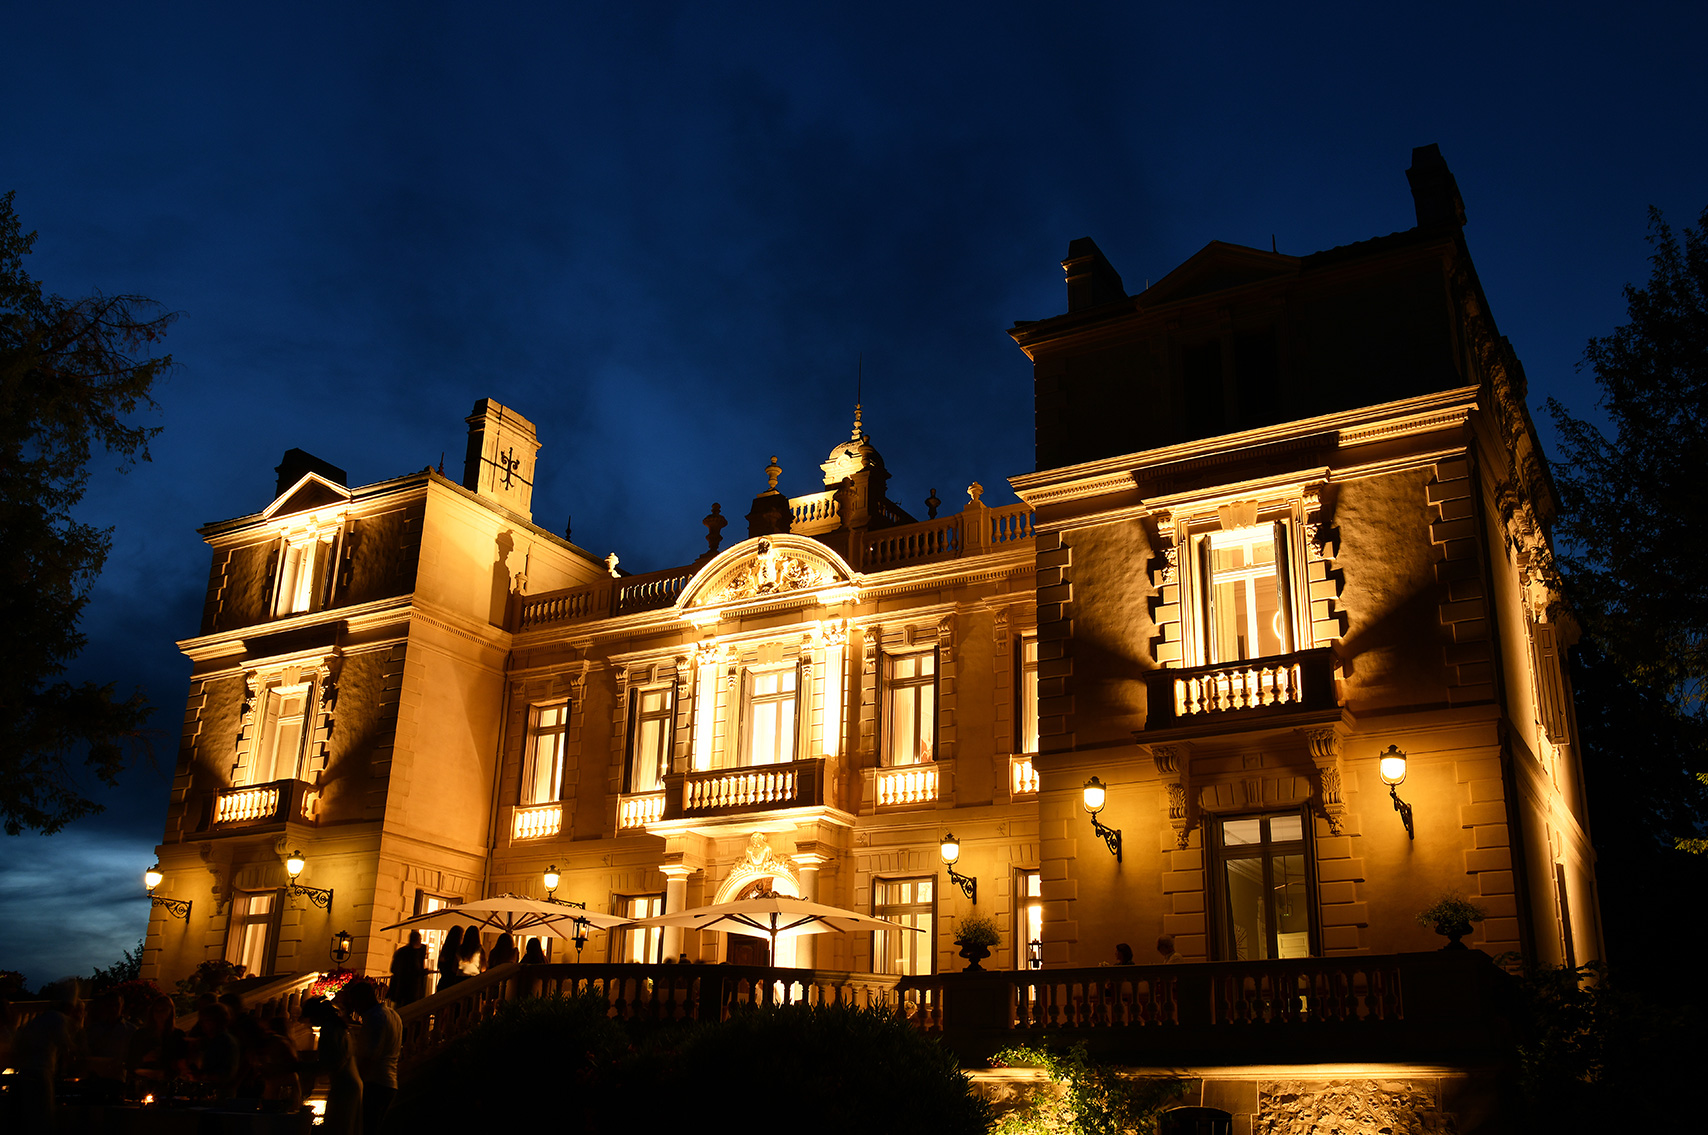 chateau-des-3-fontaines-contact-façade-de-chateau-de-nuit-eclairages-ambiance